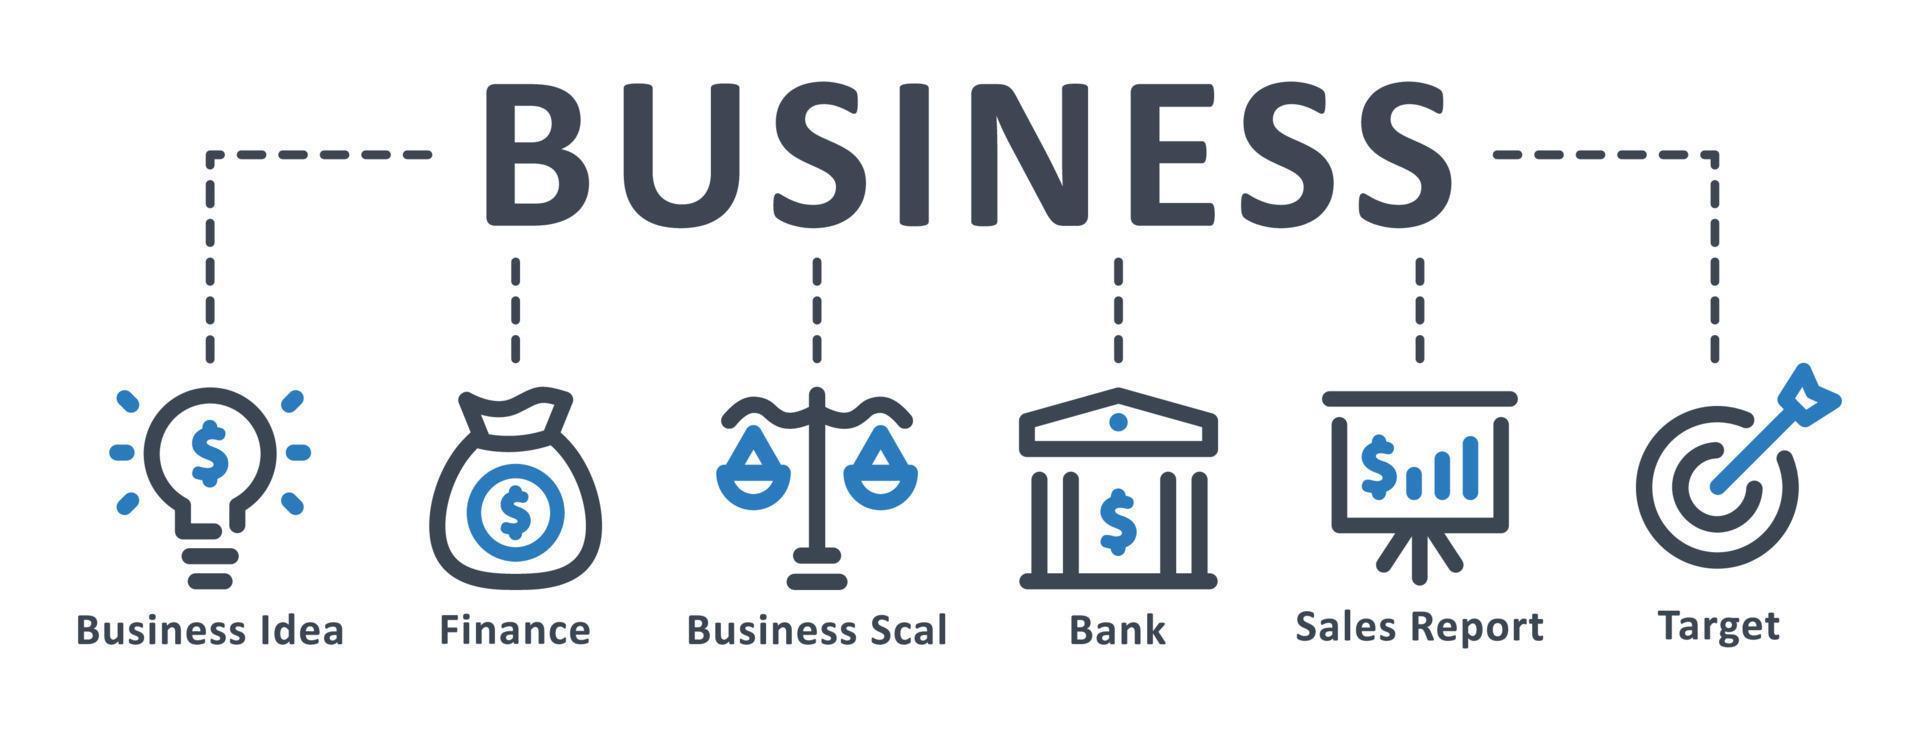 Business-Symbol - Vektor-Illustration. geschäft, idee, finanzen, investition, ziel, bank, infografik, vorlage, präsentation, konzept, banner, piktogramm, symbolsatz, symbole . vektor